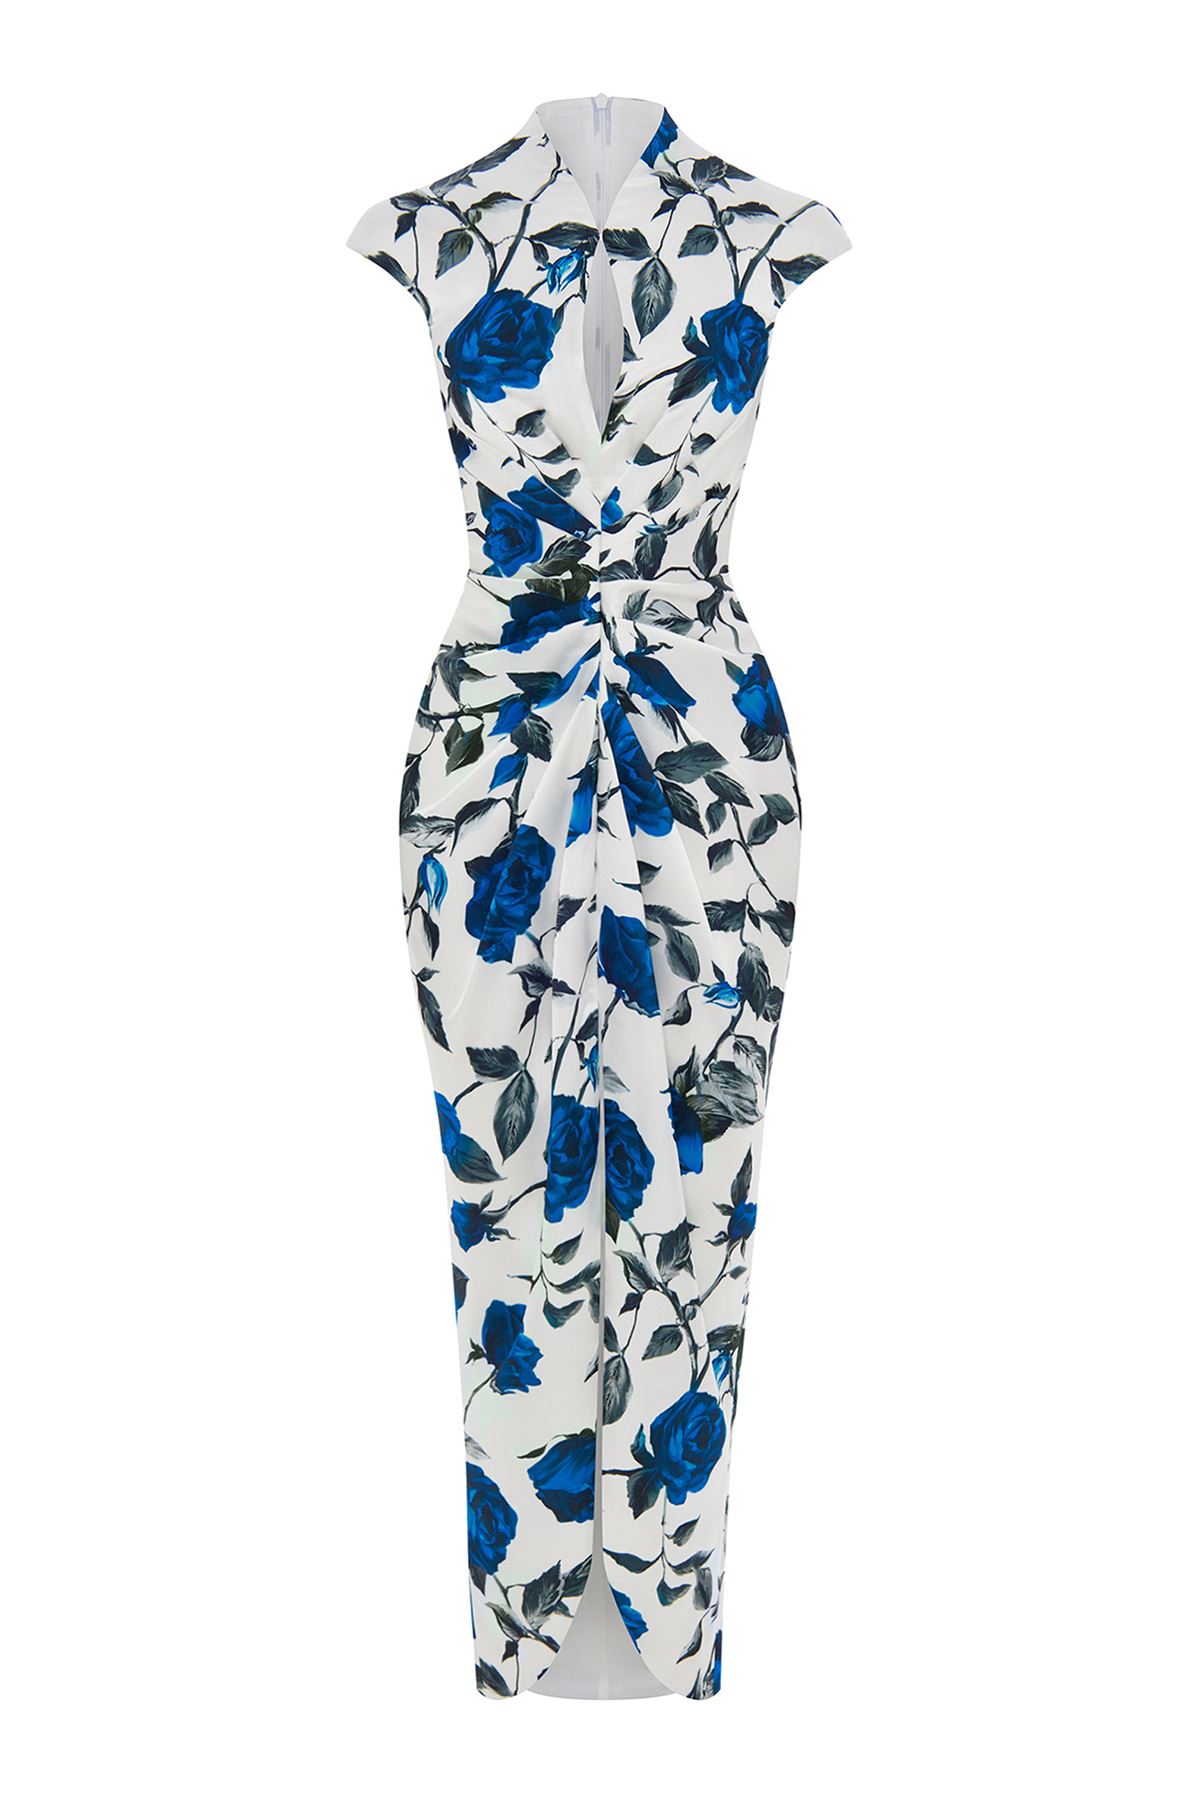 Desenli elbise midi boy yırtmaçlı elbise özel tasarım likralı çiçekli 10096265899